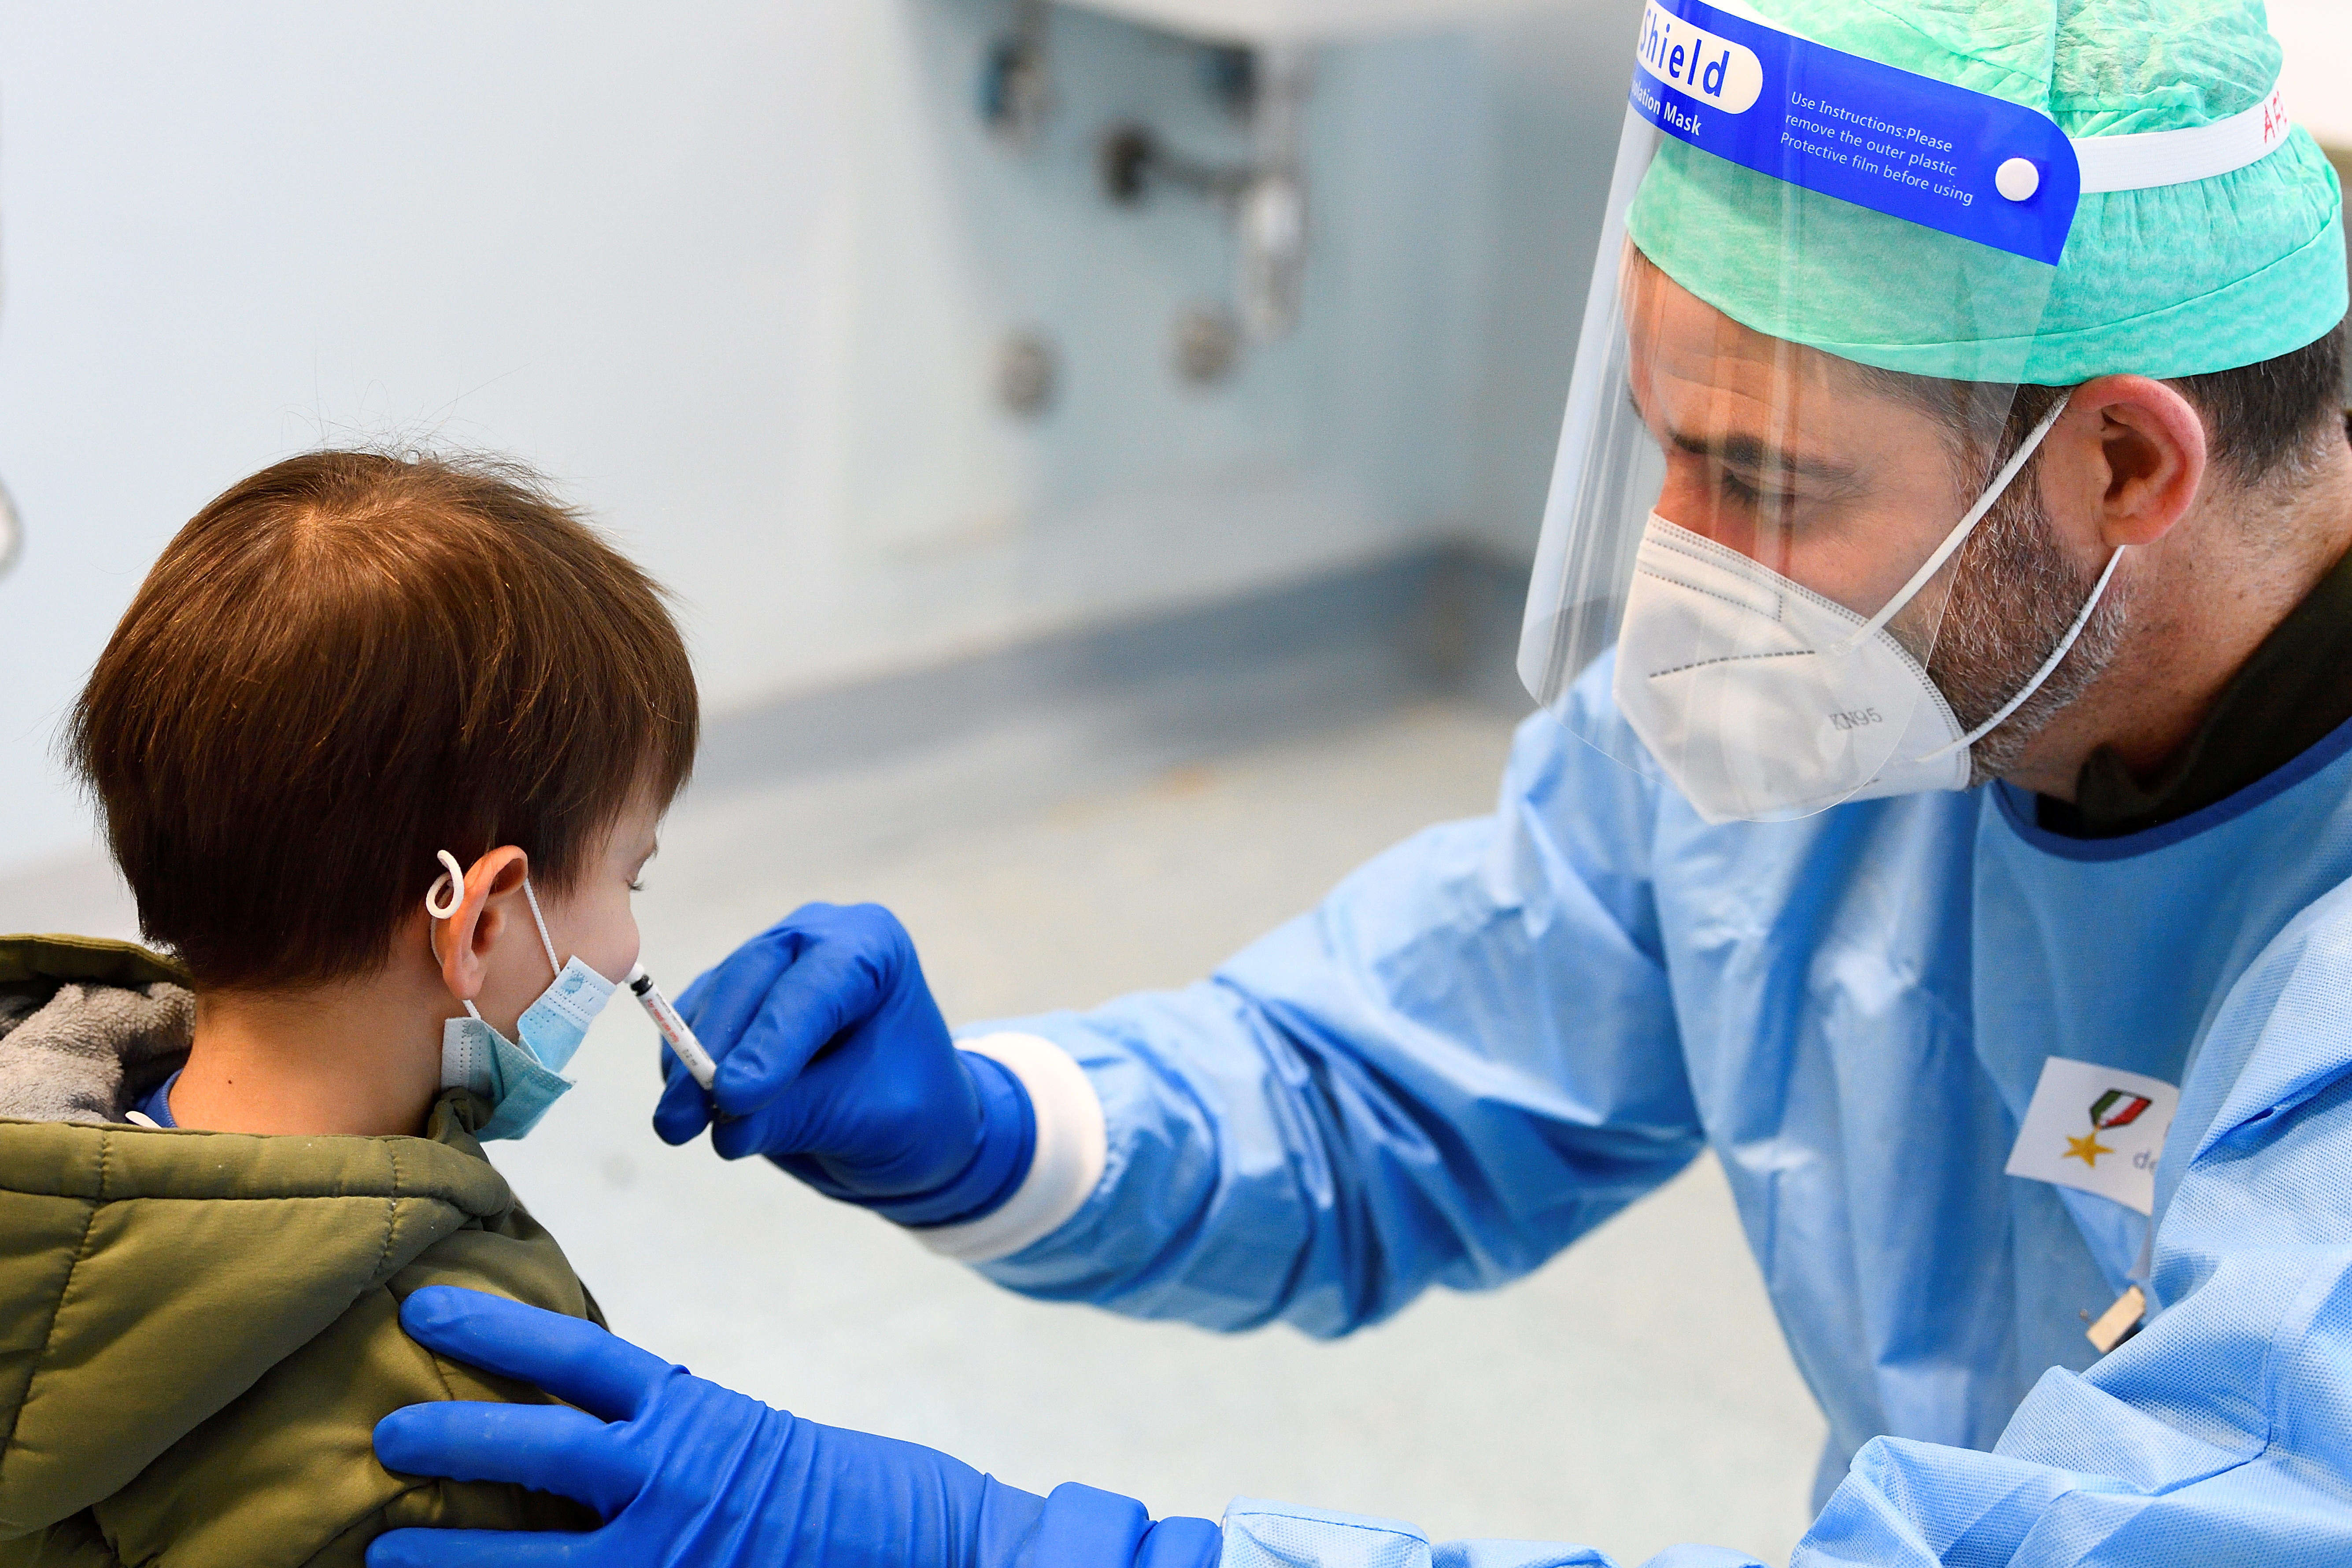 FOTO DE ARCHIVO: Un médico militar en Milán, Italia, administra una vacuna antigripal a un niño para evitar la confusión con los síntomas del COVID-19 el 20 de noviembre de 2020. REUTERS/Flavio Lo Scalzo